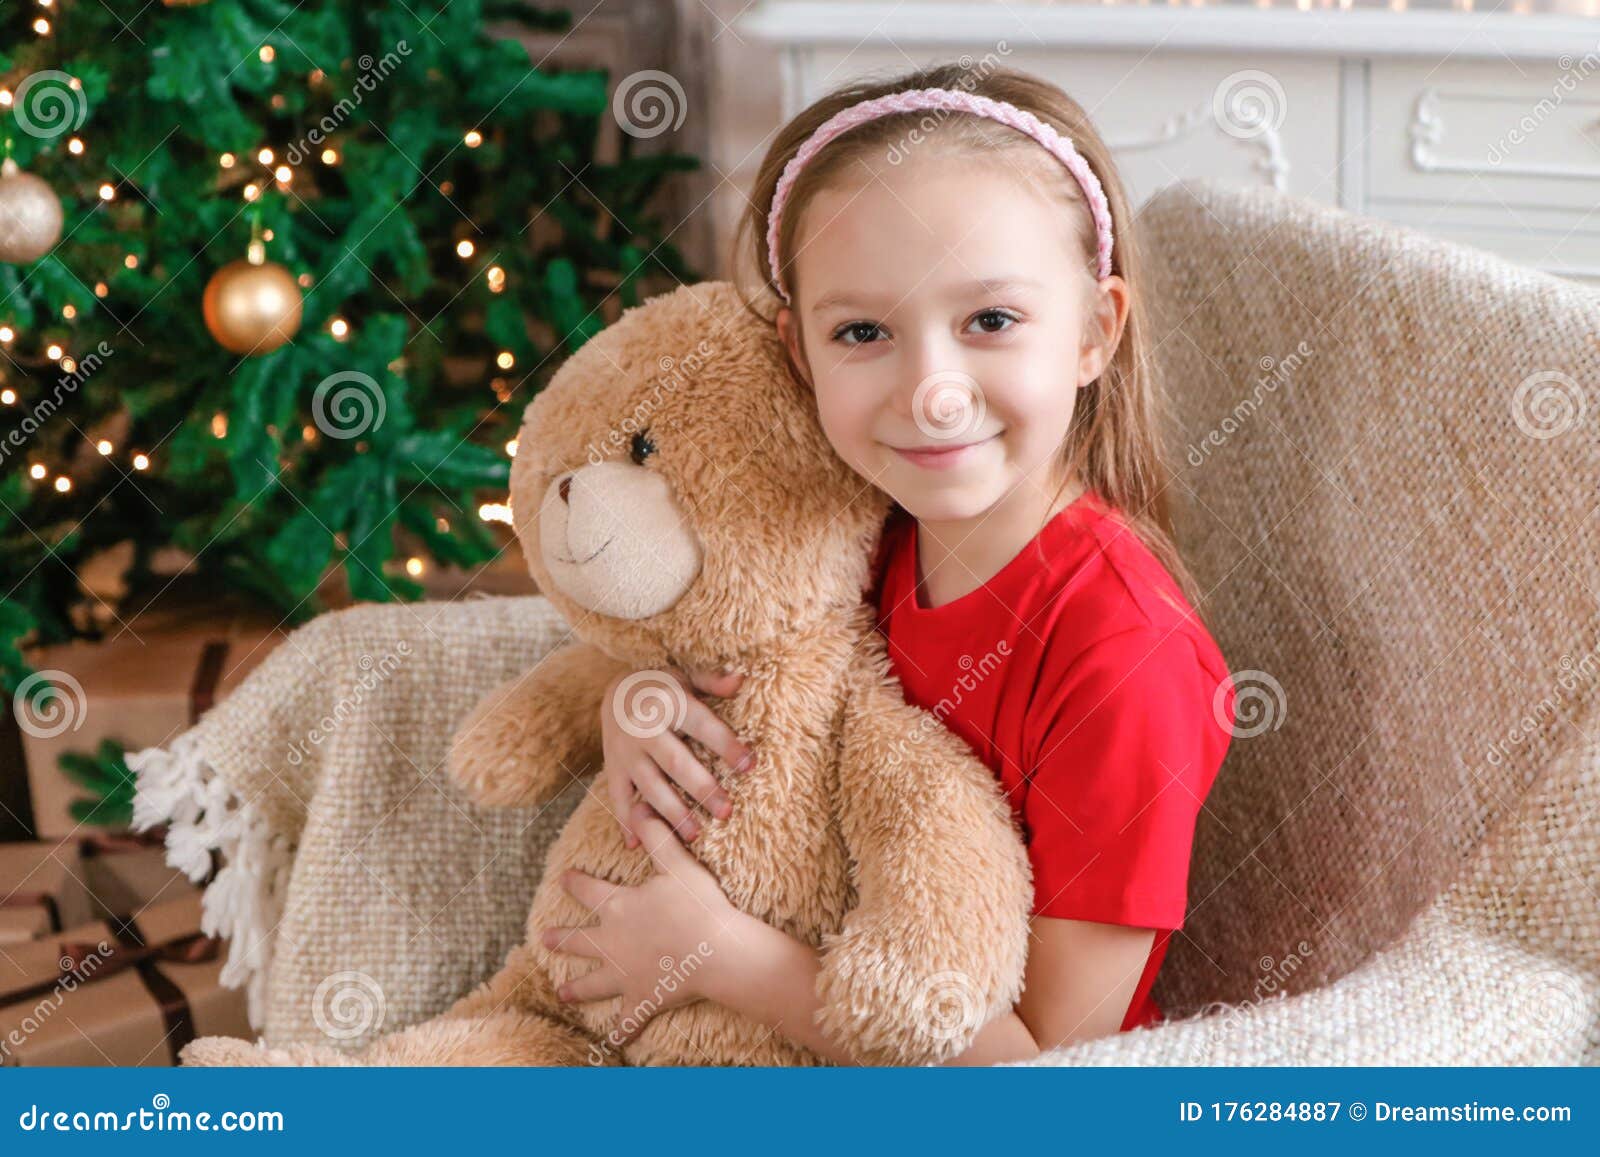 Little Girl Hug Bear at Christmas Photo Stock Image - Image of adorable ...